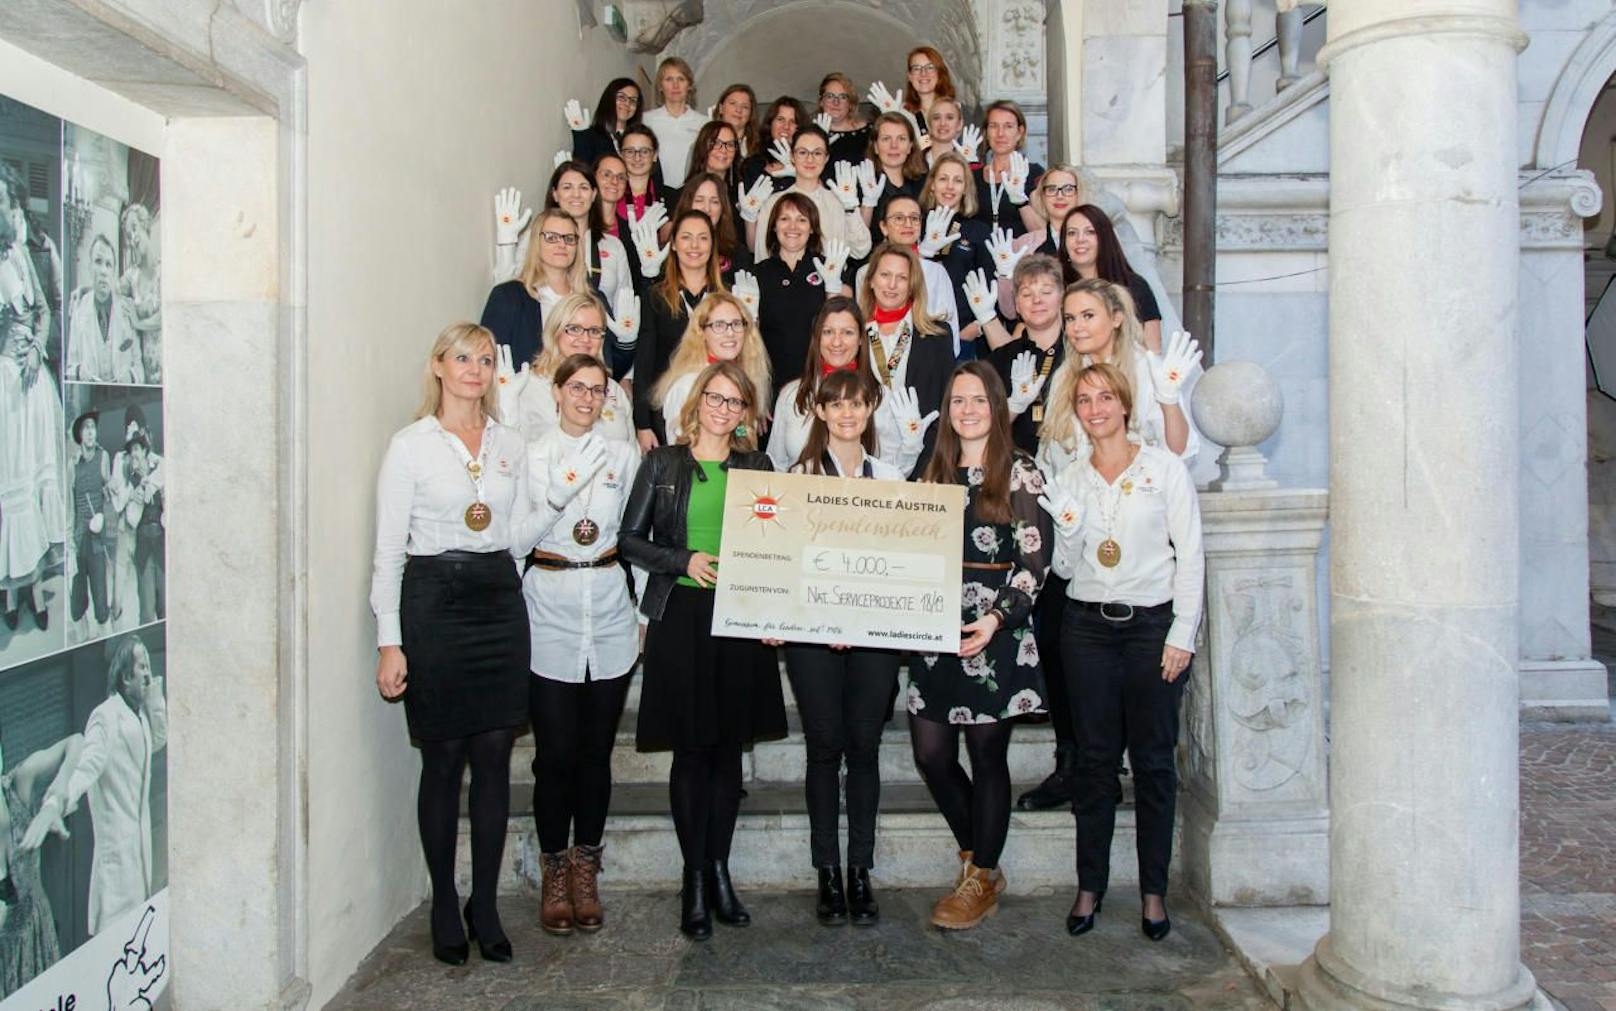 Die Ladies übergaben den Spendenscheck in der Höhe von insgesamt 4.000 Euro an die Vertreterinnen der beiden Fördervereine.